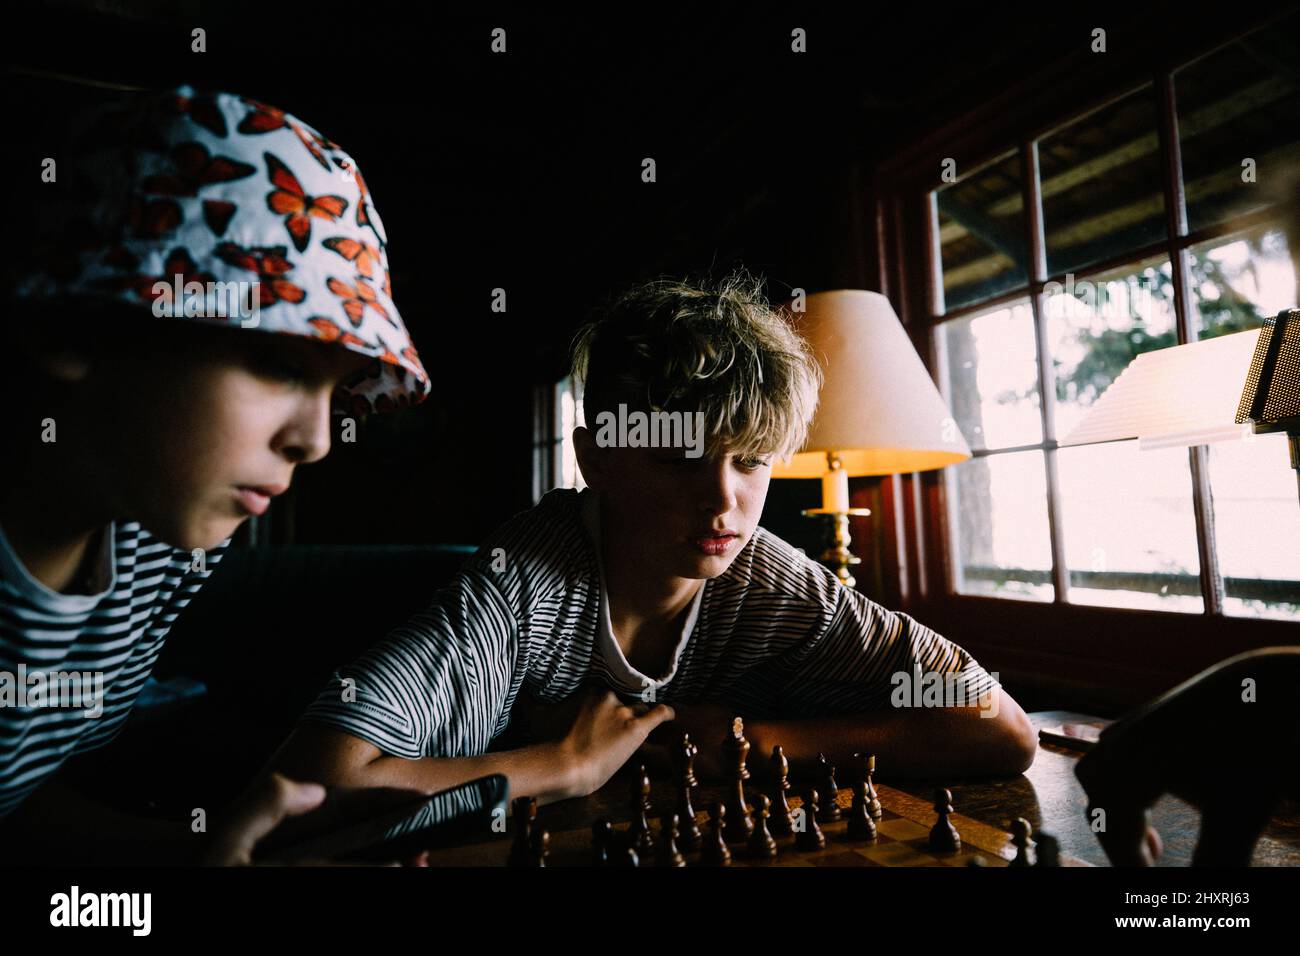 Les garçons jouent ensemble aux échecs dans une cabine rustique à la lumière de la fenêtre Banque D'Images